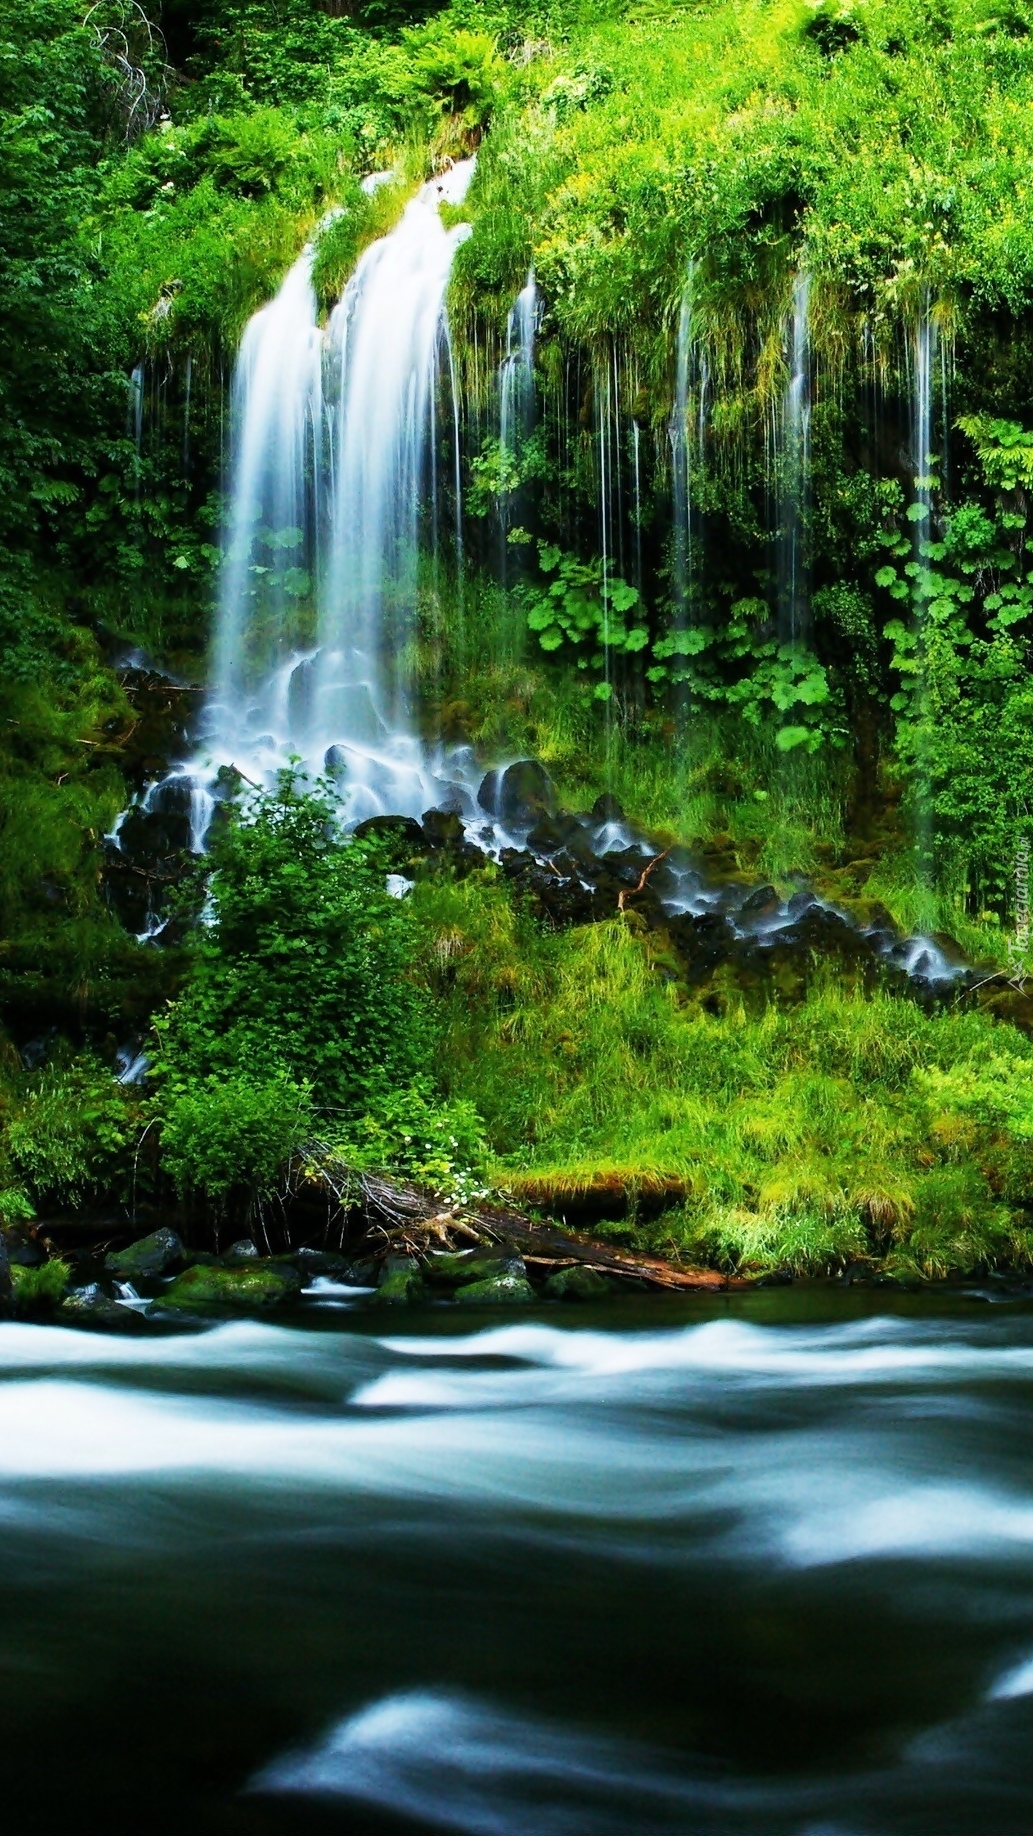 Leśna rzeka z wodospadem w zieleni